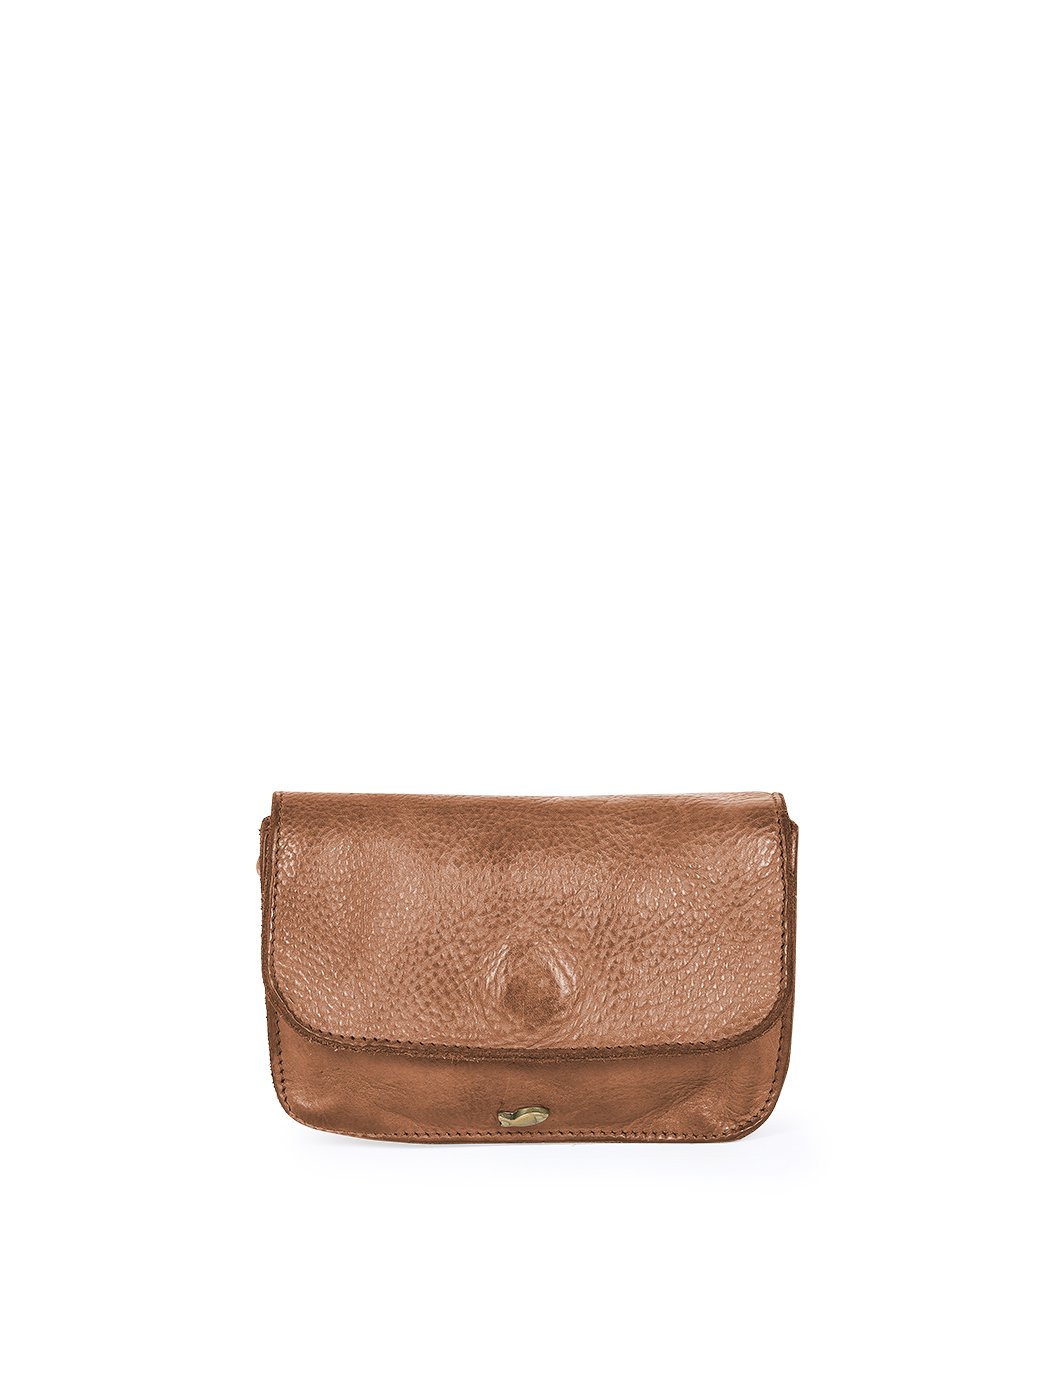 .Женская миниатюрная сумочка темно - коричневого цвета